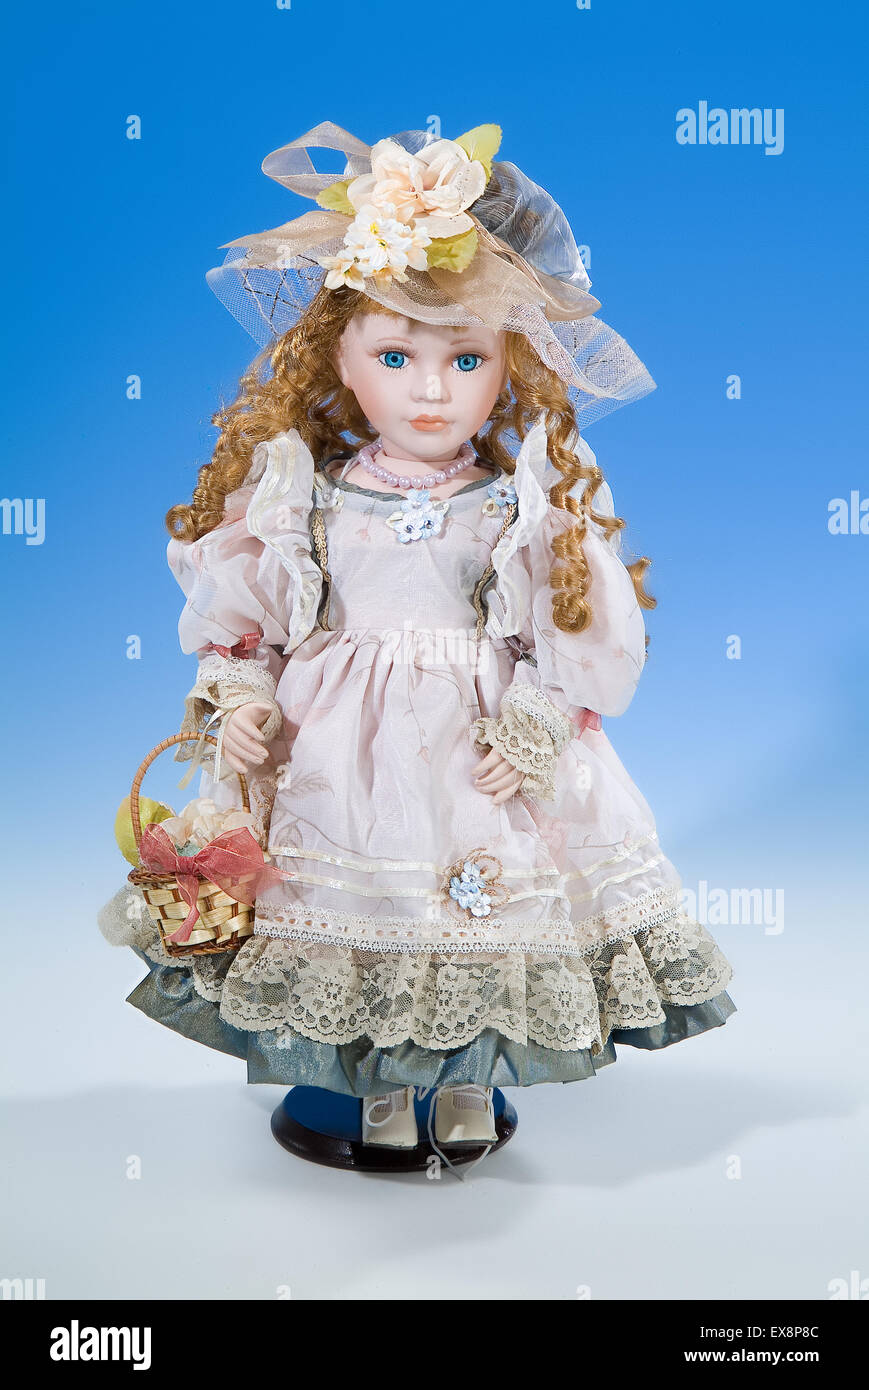 Una bambola giocattolo vestire moda ritratto persona dono infanzia retrò vintage vecchia posizione verticale oggetto sfondo bianco blu Foto Stock